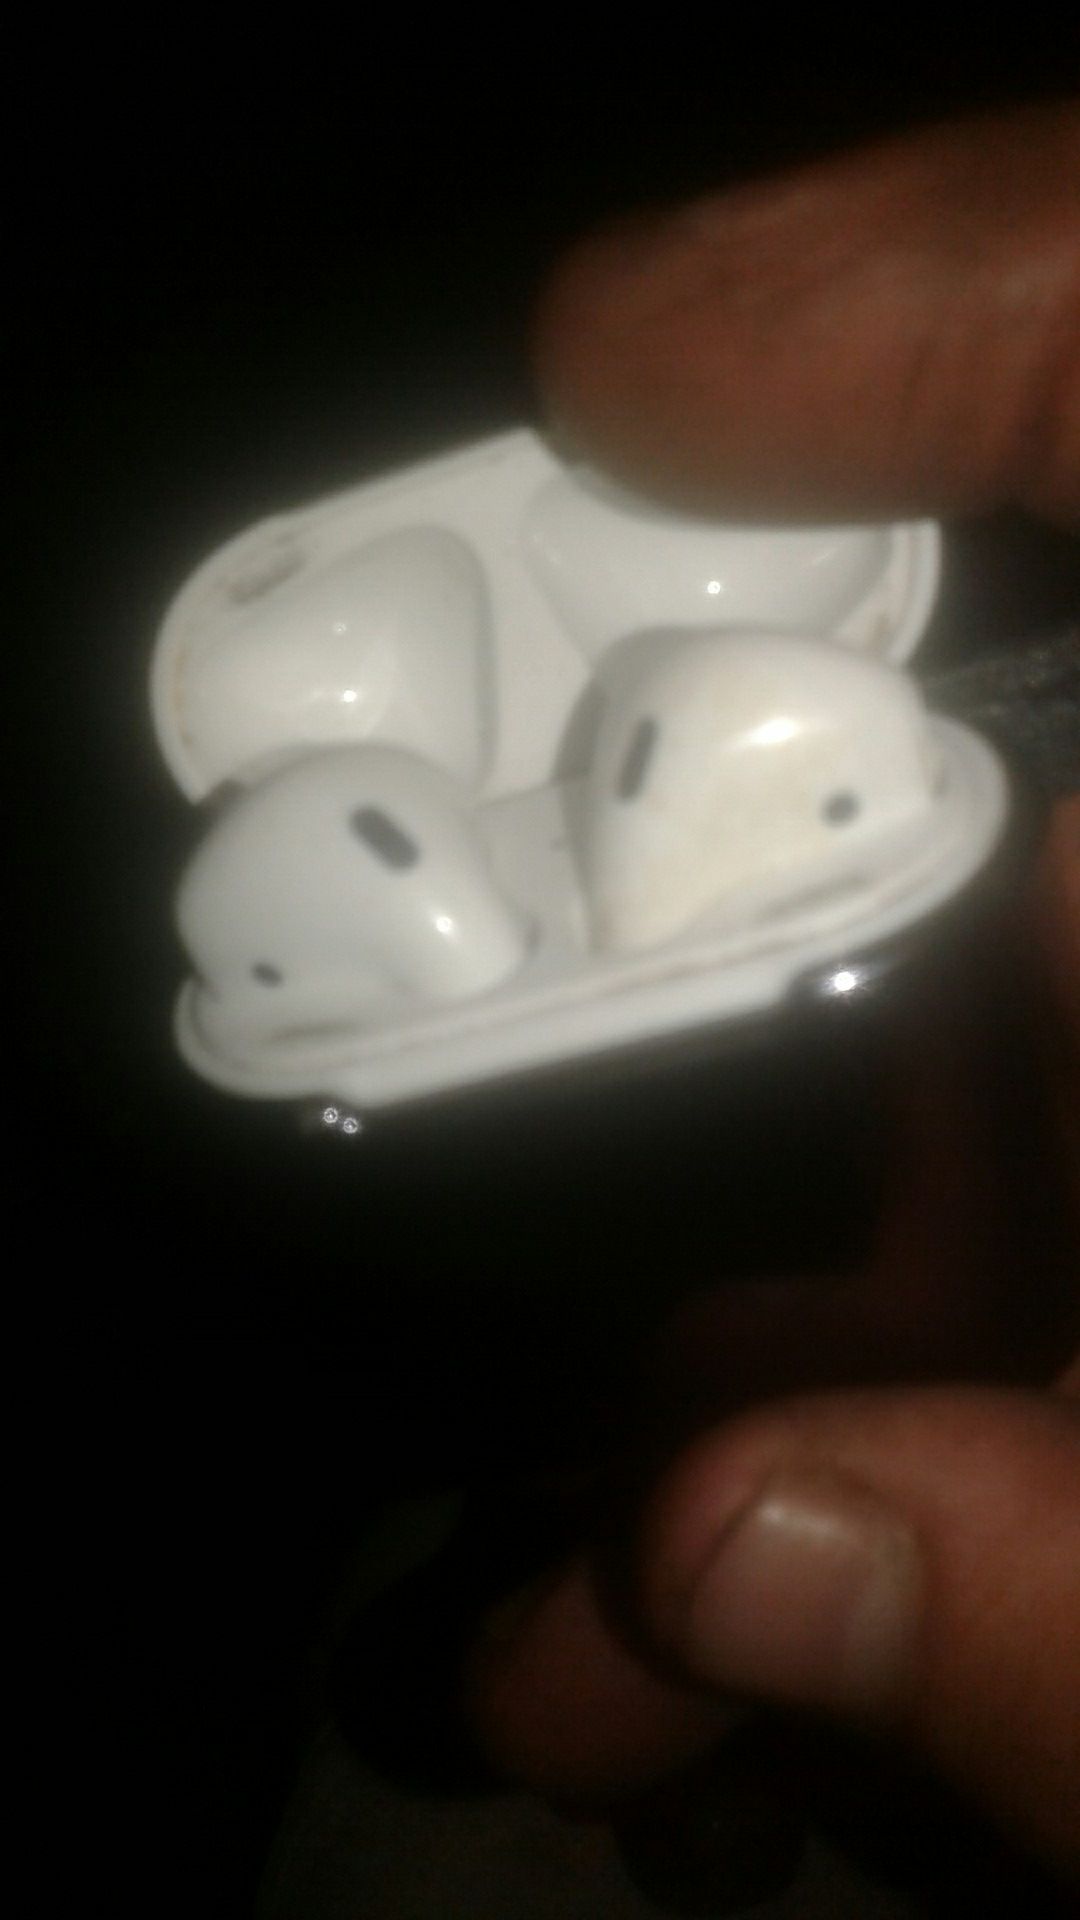 IPhone earpods